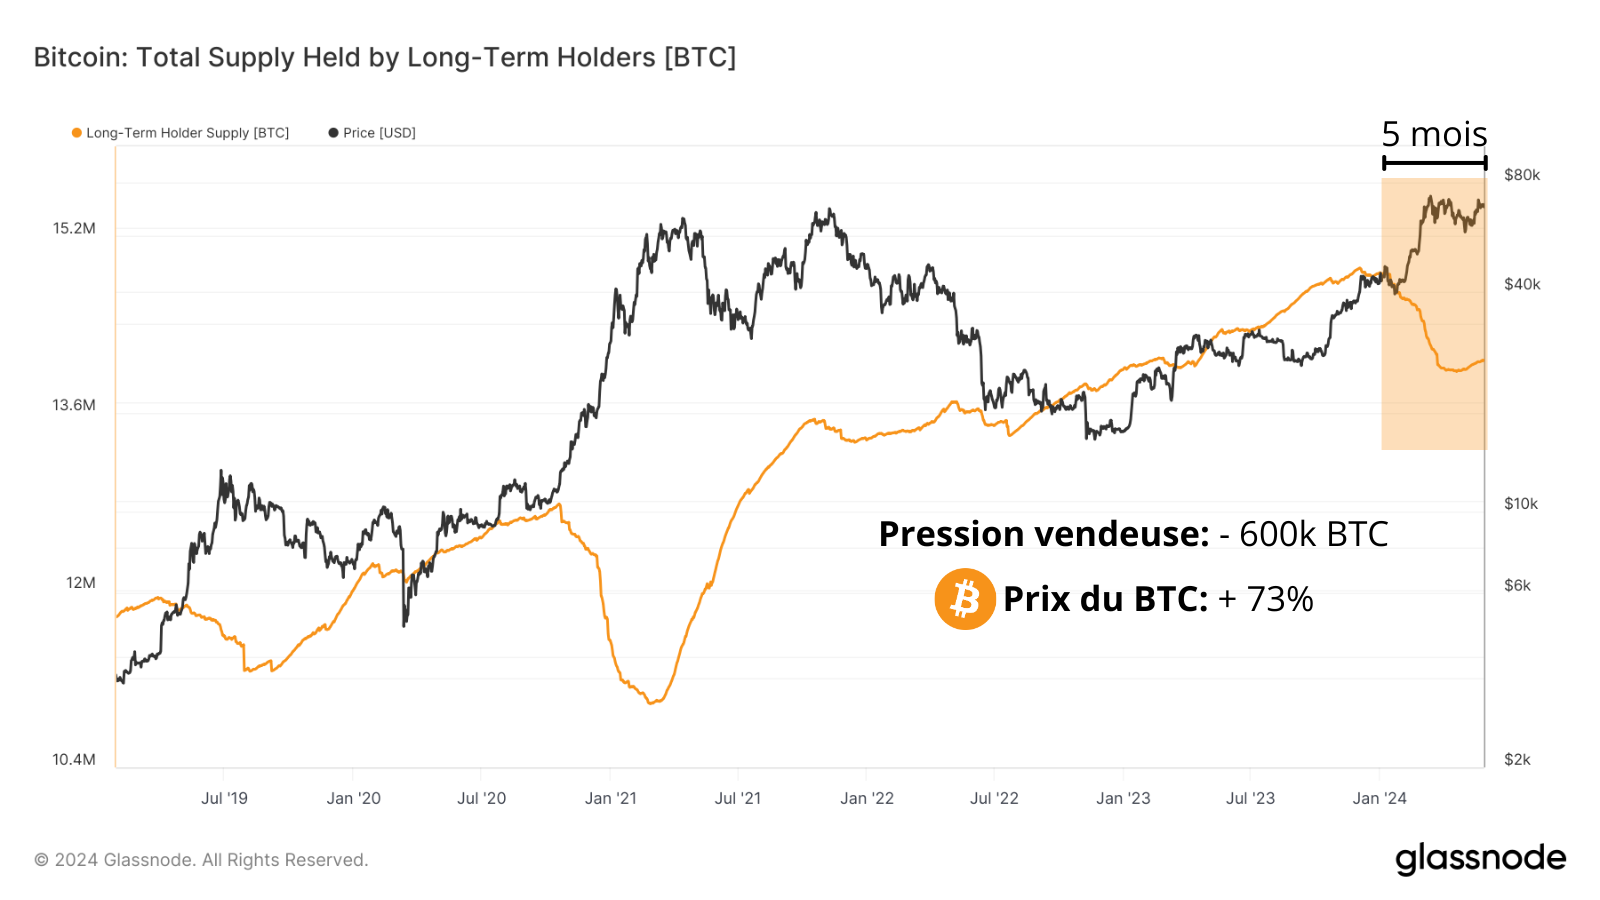 La pression vendeuse des détenteurs long terme de bitcoins n'a pas freiné la tendance haussière ces 5 derniers mois